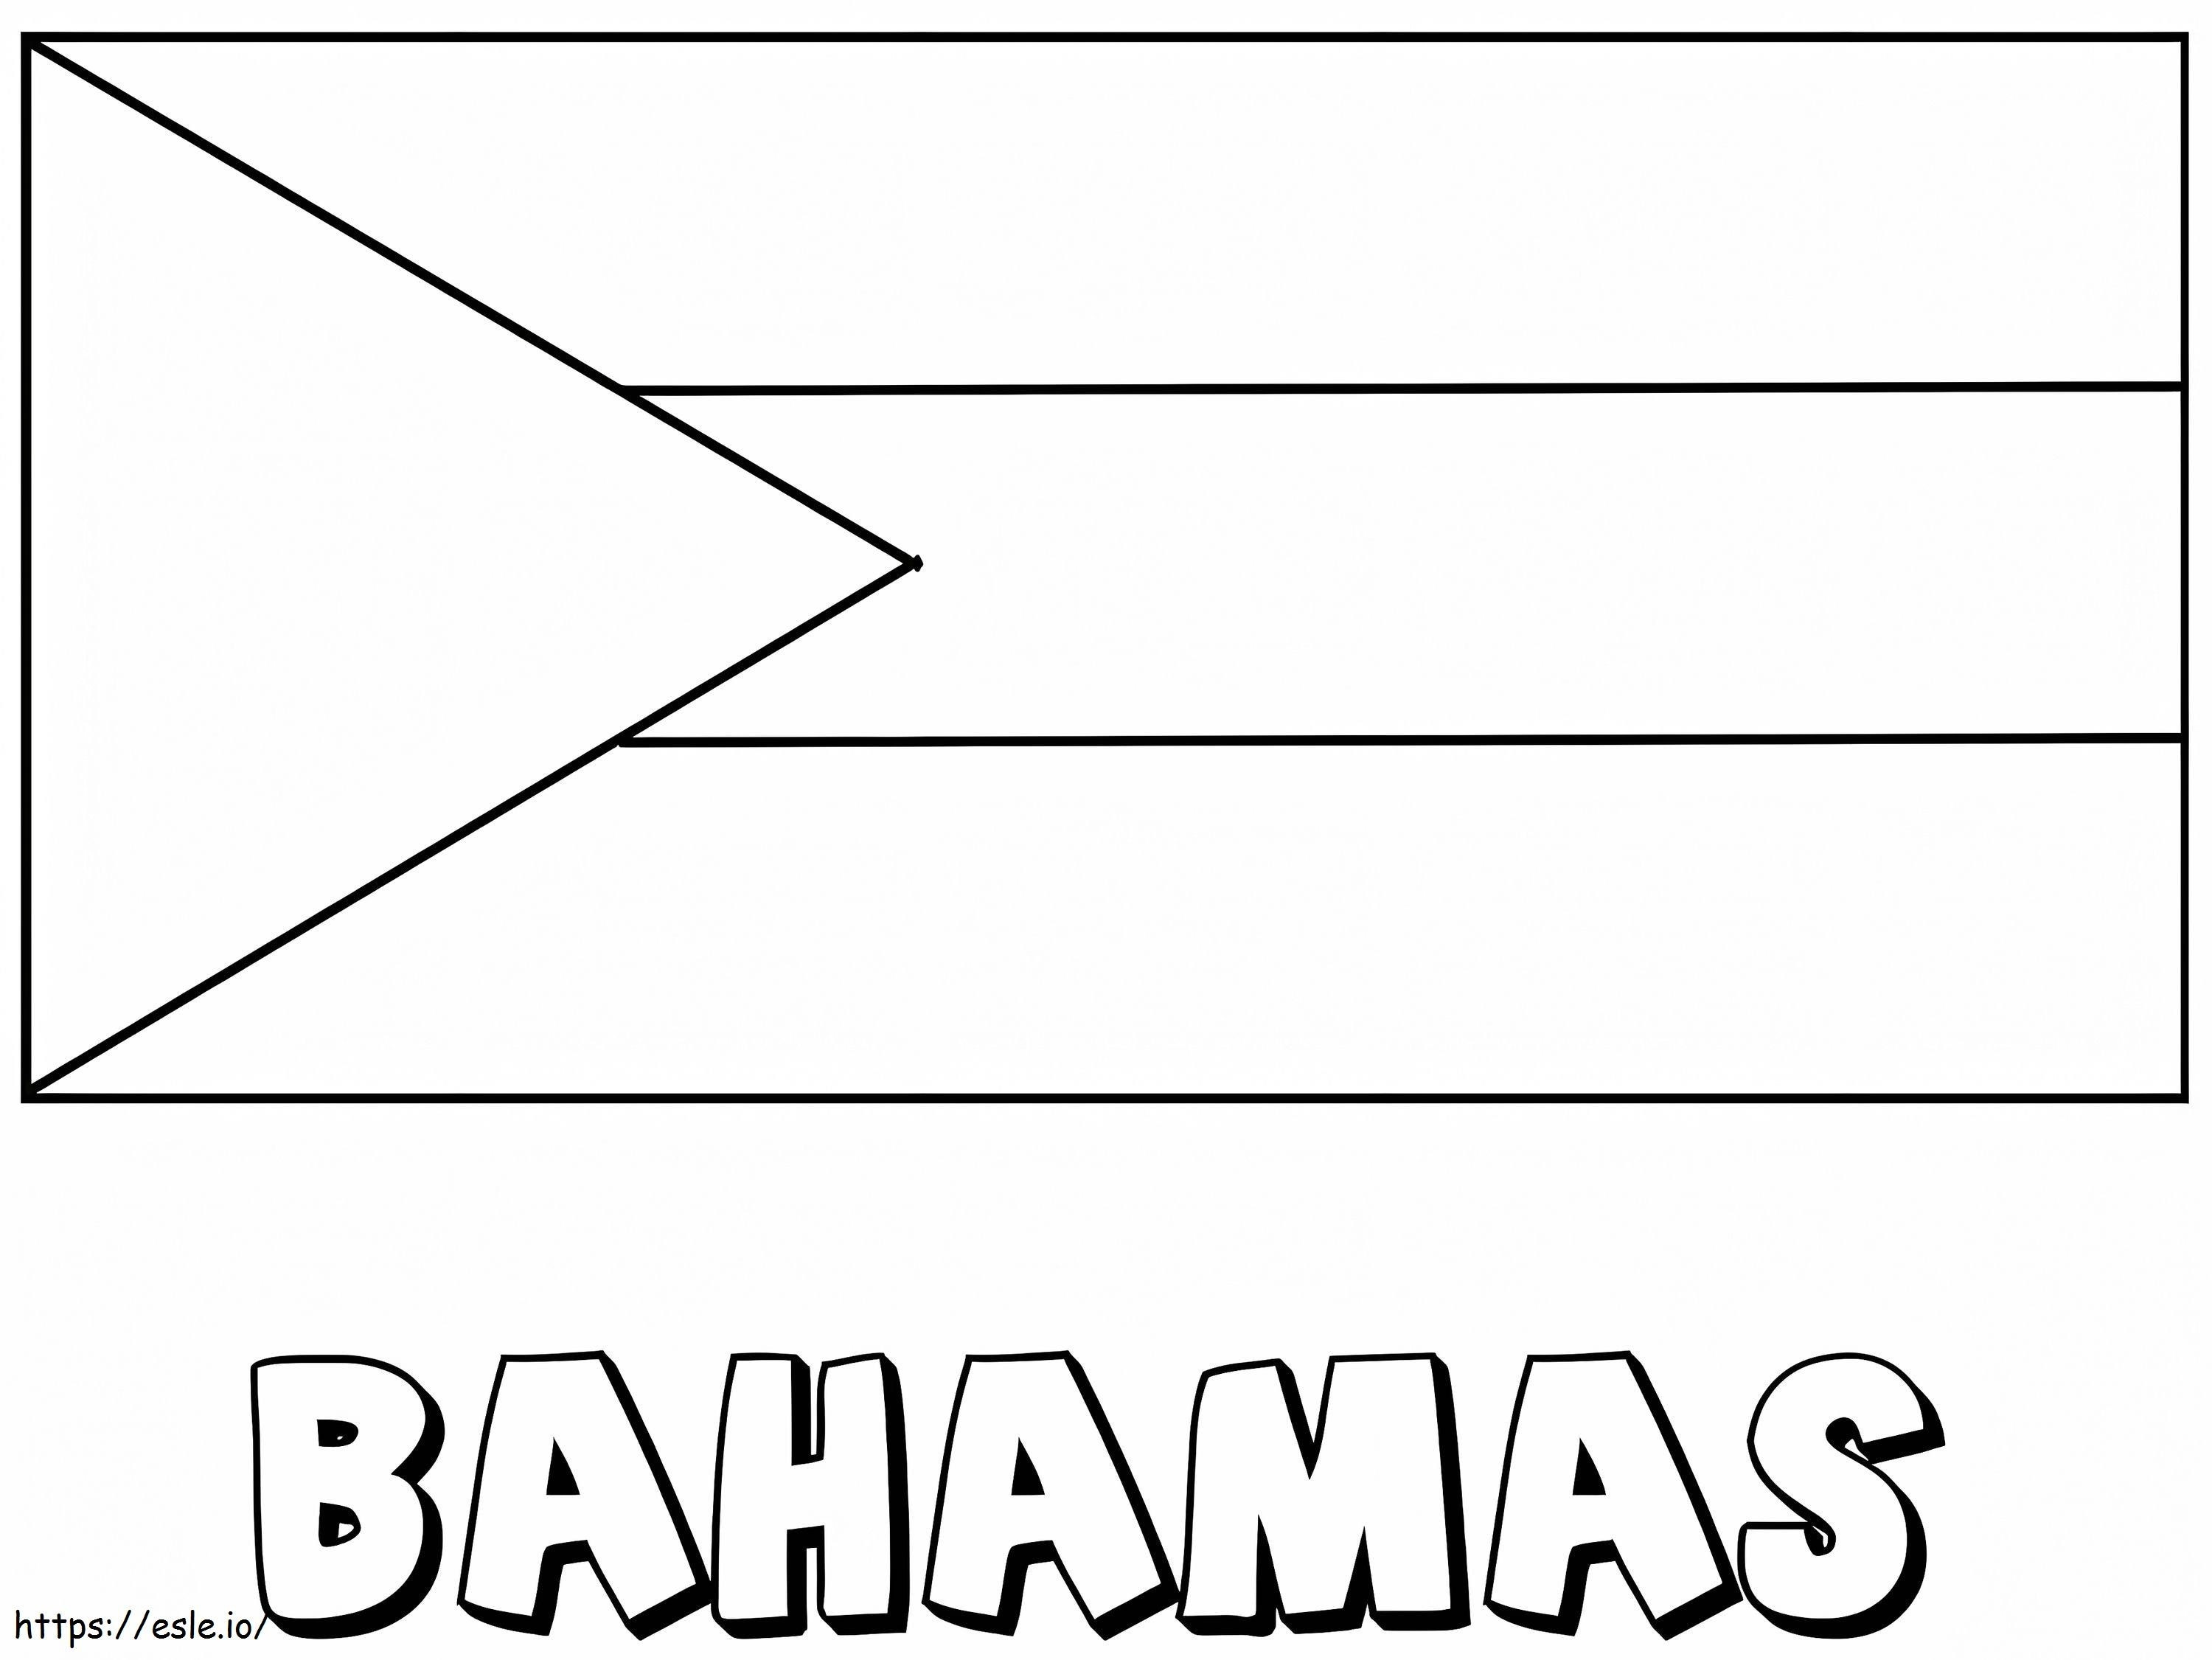 バハマの国旗 ぬりえ - 塗り絵